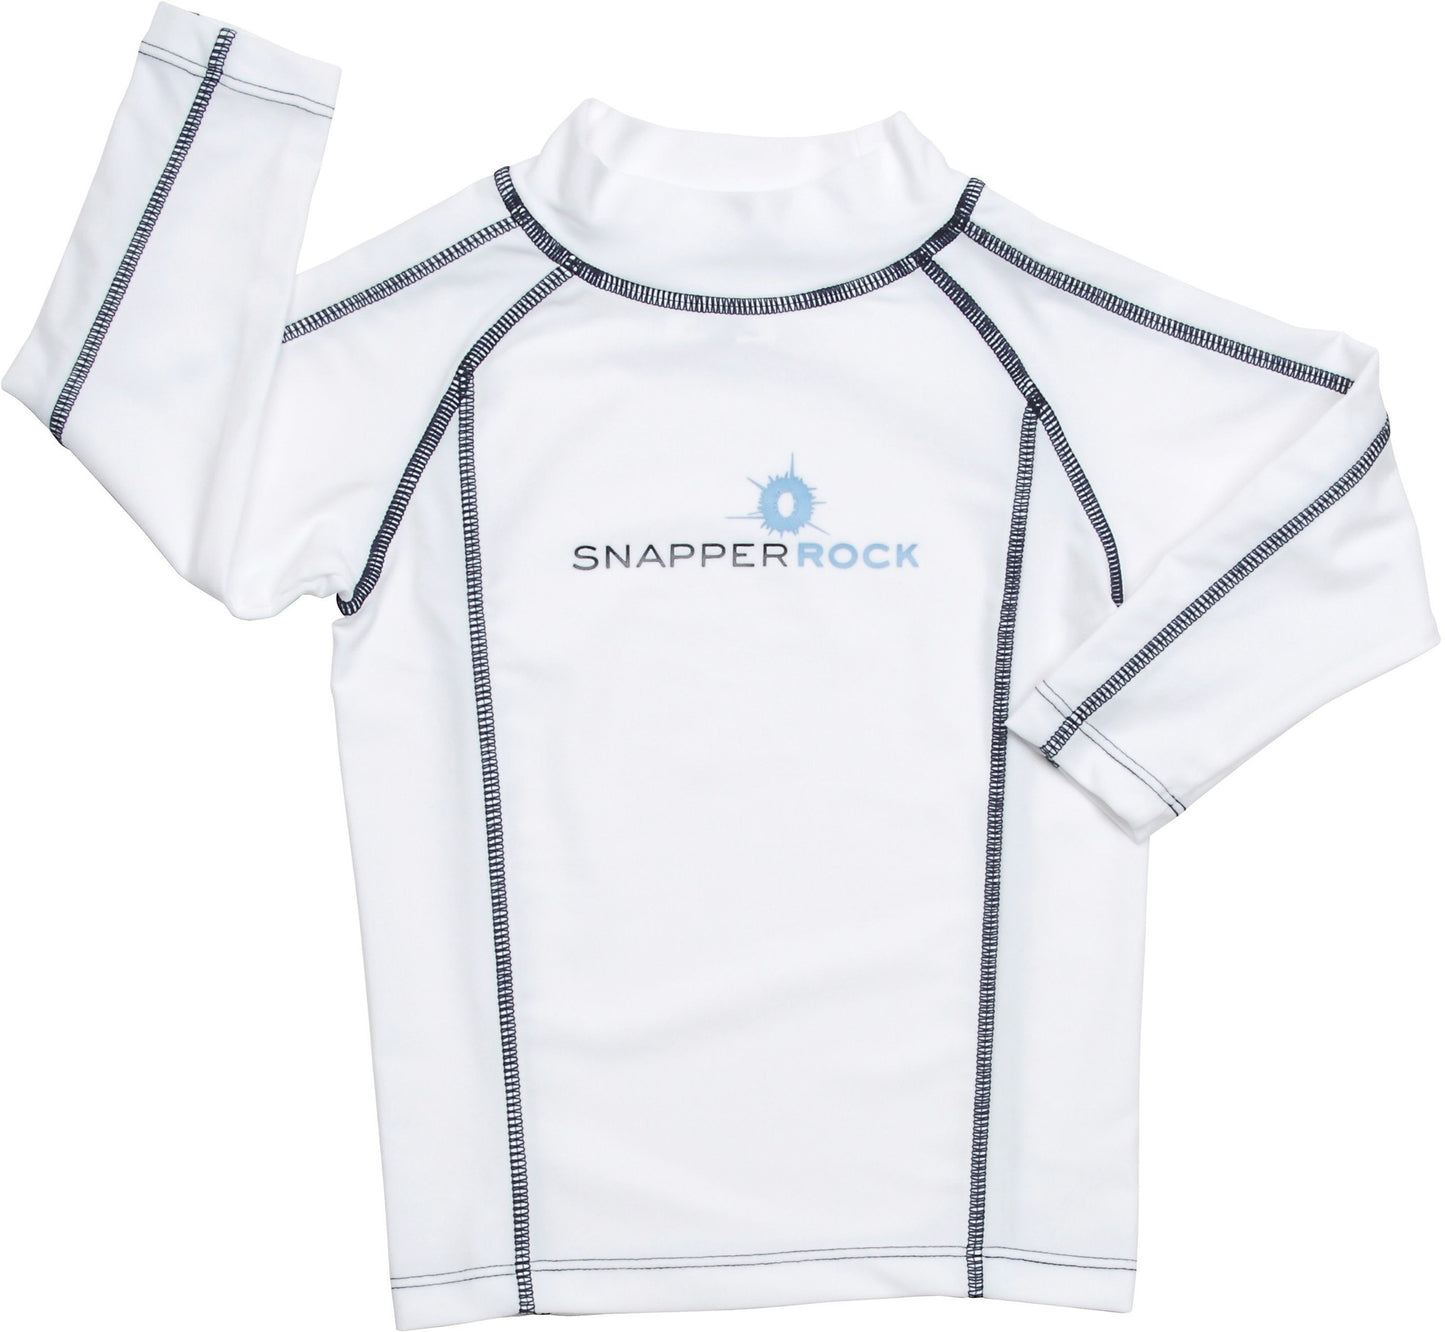 Snapper Rock - UV-beschermend zwemshirt met lange mouwen voor kinderen - wit blauw